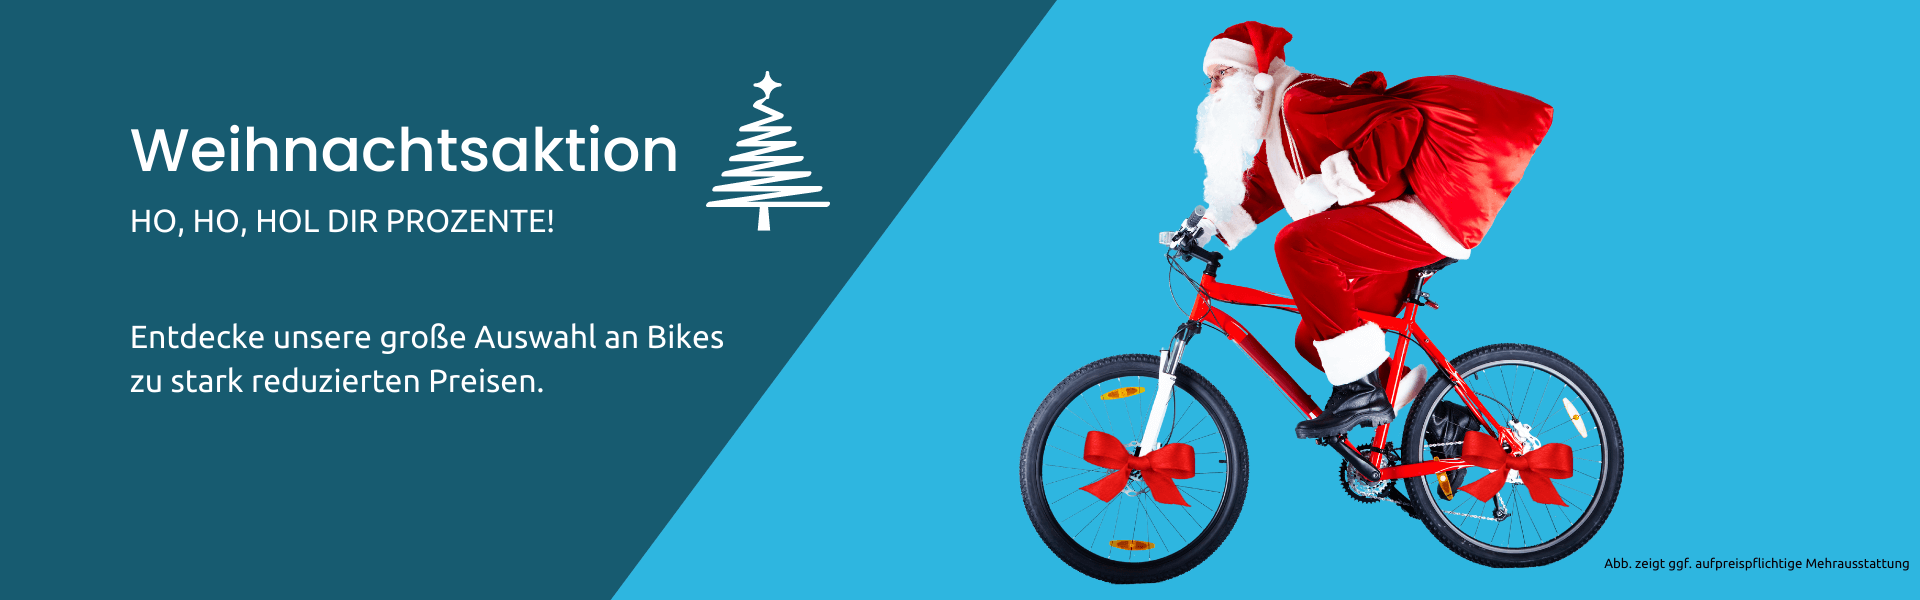 Weihnachtsmann auf Fahrrad